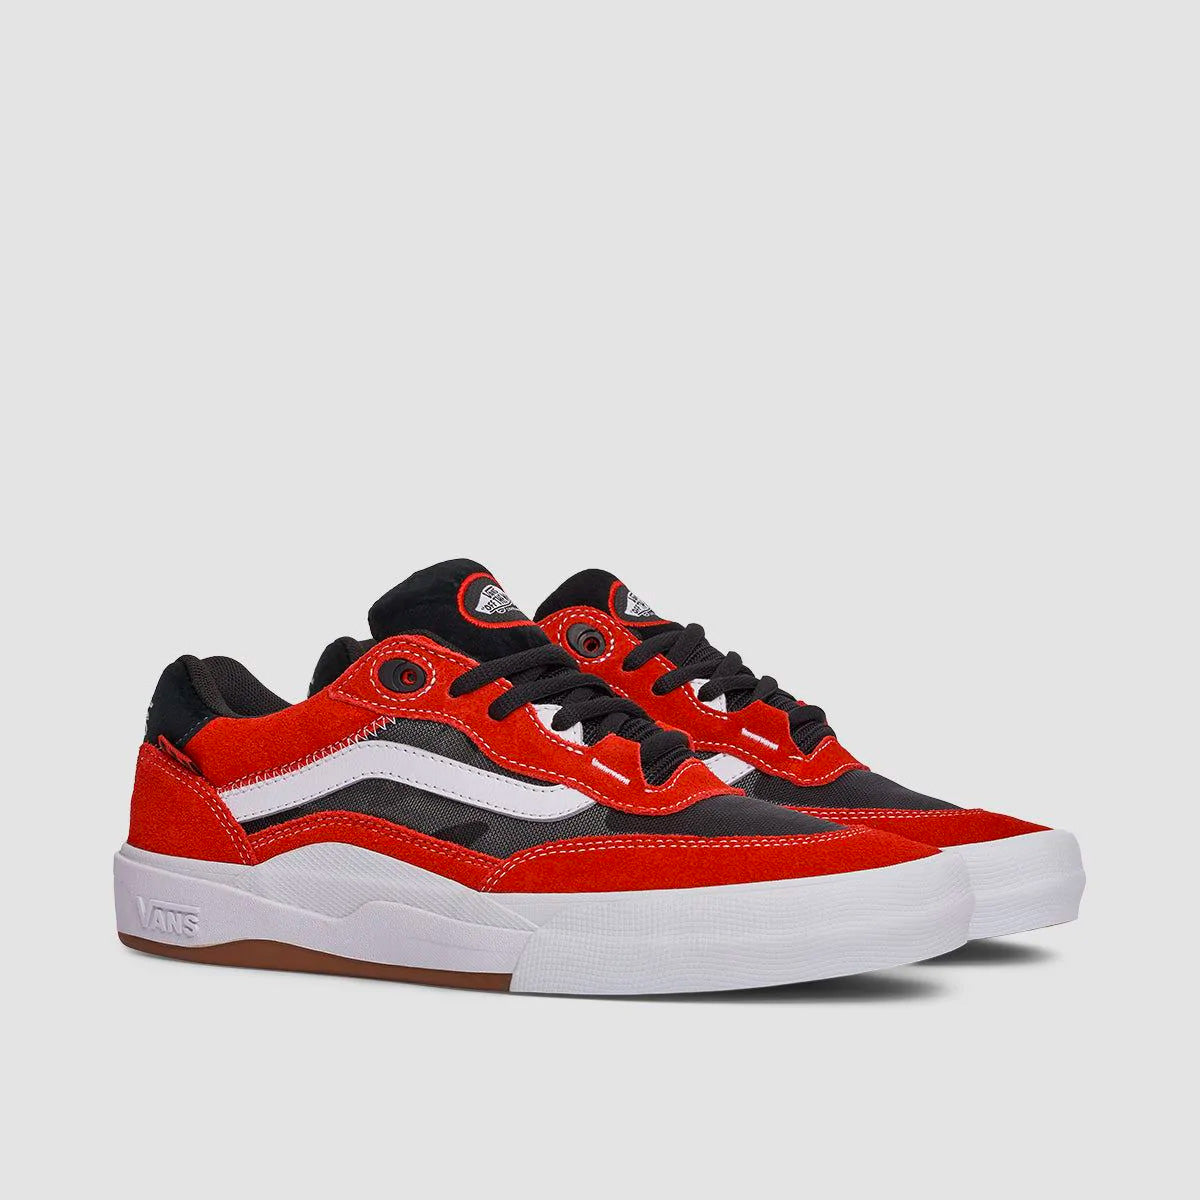 Vans Wayvee Shoes - Athletic Black/Red - Kids